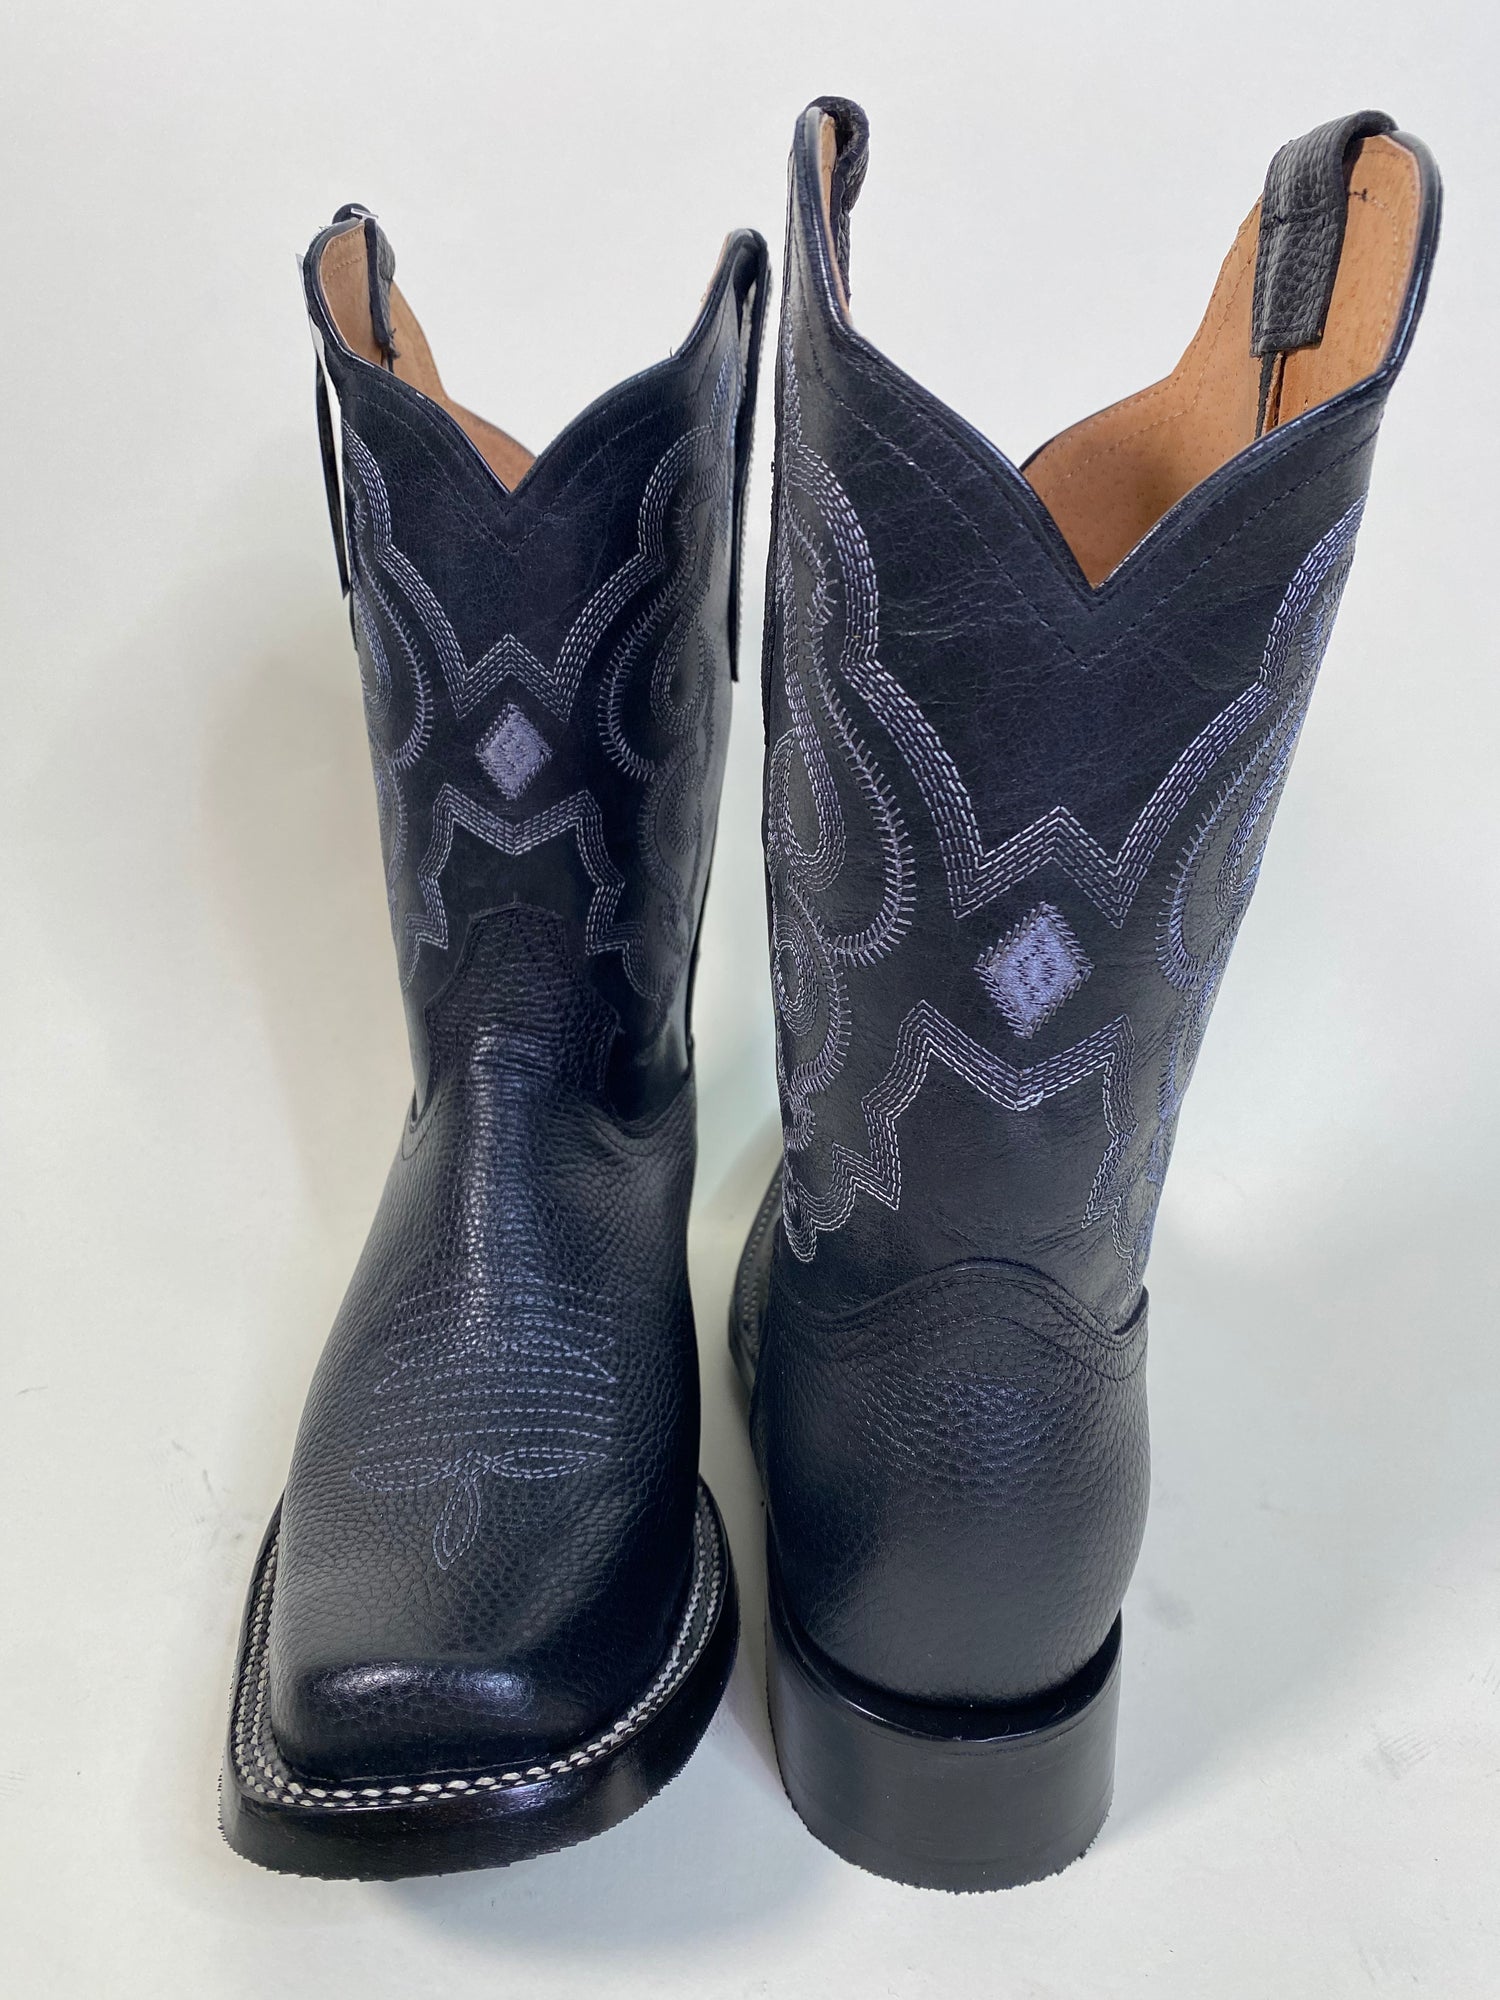 BOOTS SONORA vintage Roper noirs/bottes western Sonora authentiques pour  hommes/bottes de campagne bohème rockabilly -  Canada